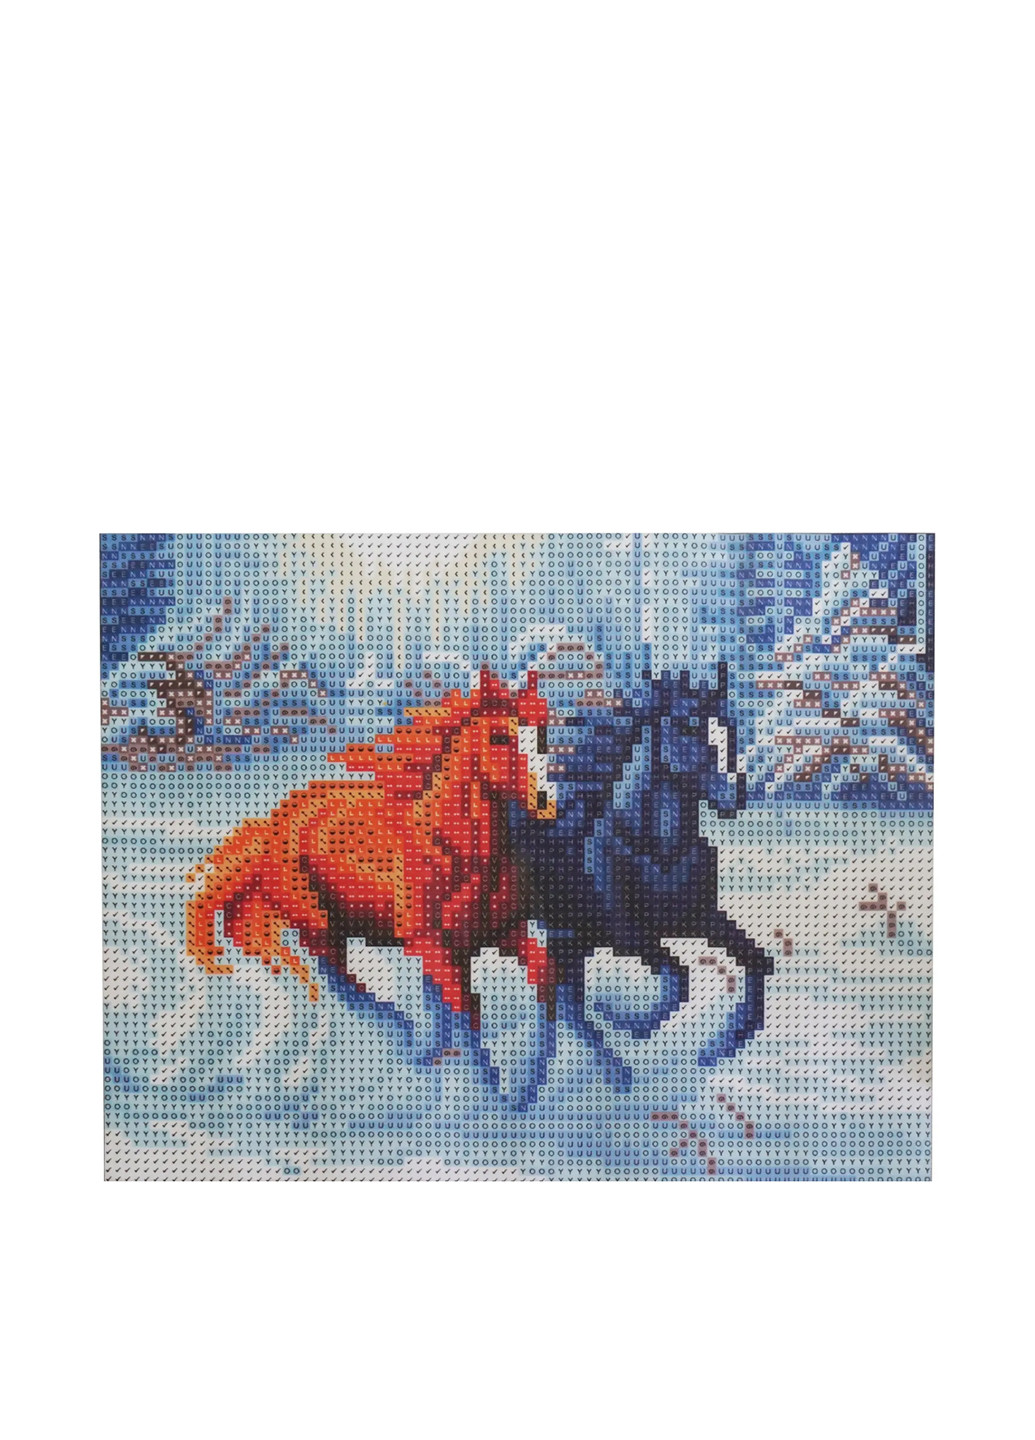 Картина із самоцвітів Коня у зимовому лісі, 25х30 см TV-magazin (257286724)